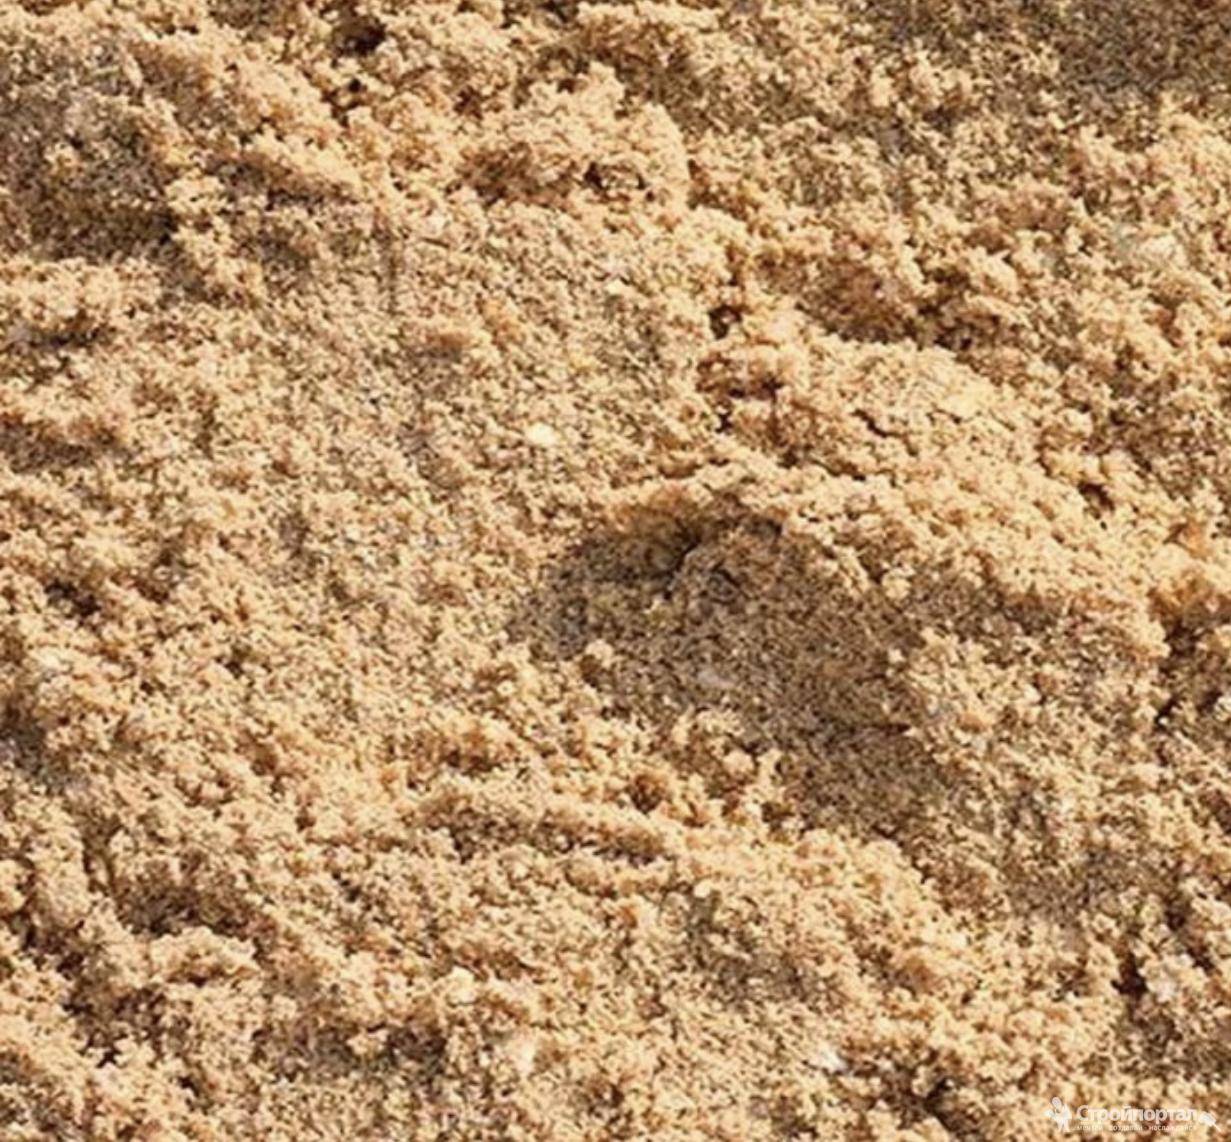 Гост 8736-2014: технические характеристики песка для строительных работ, природный речной средней крупности, условия для среднезернистого